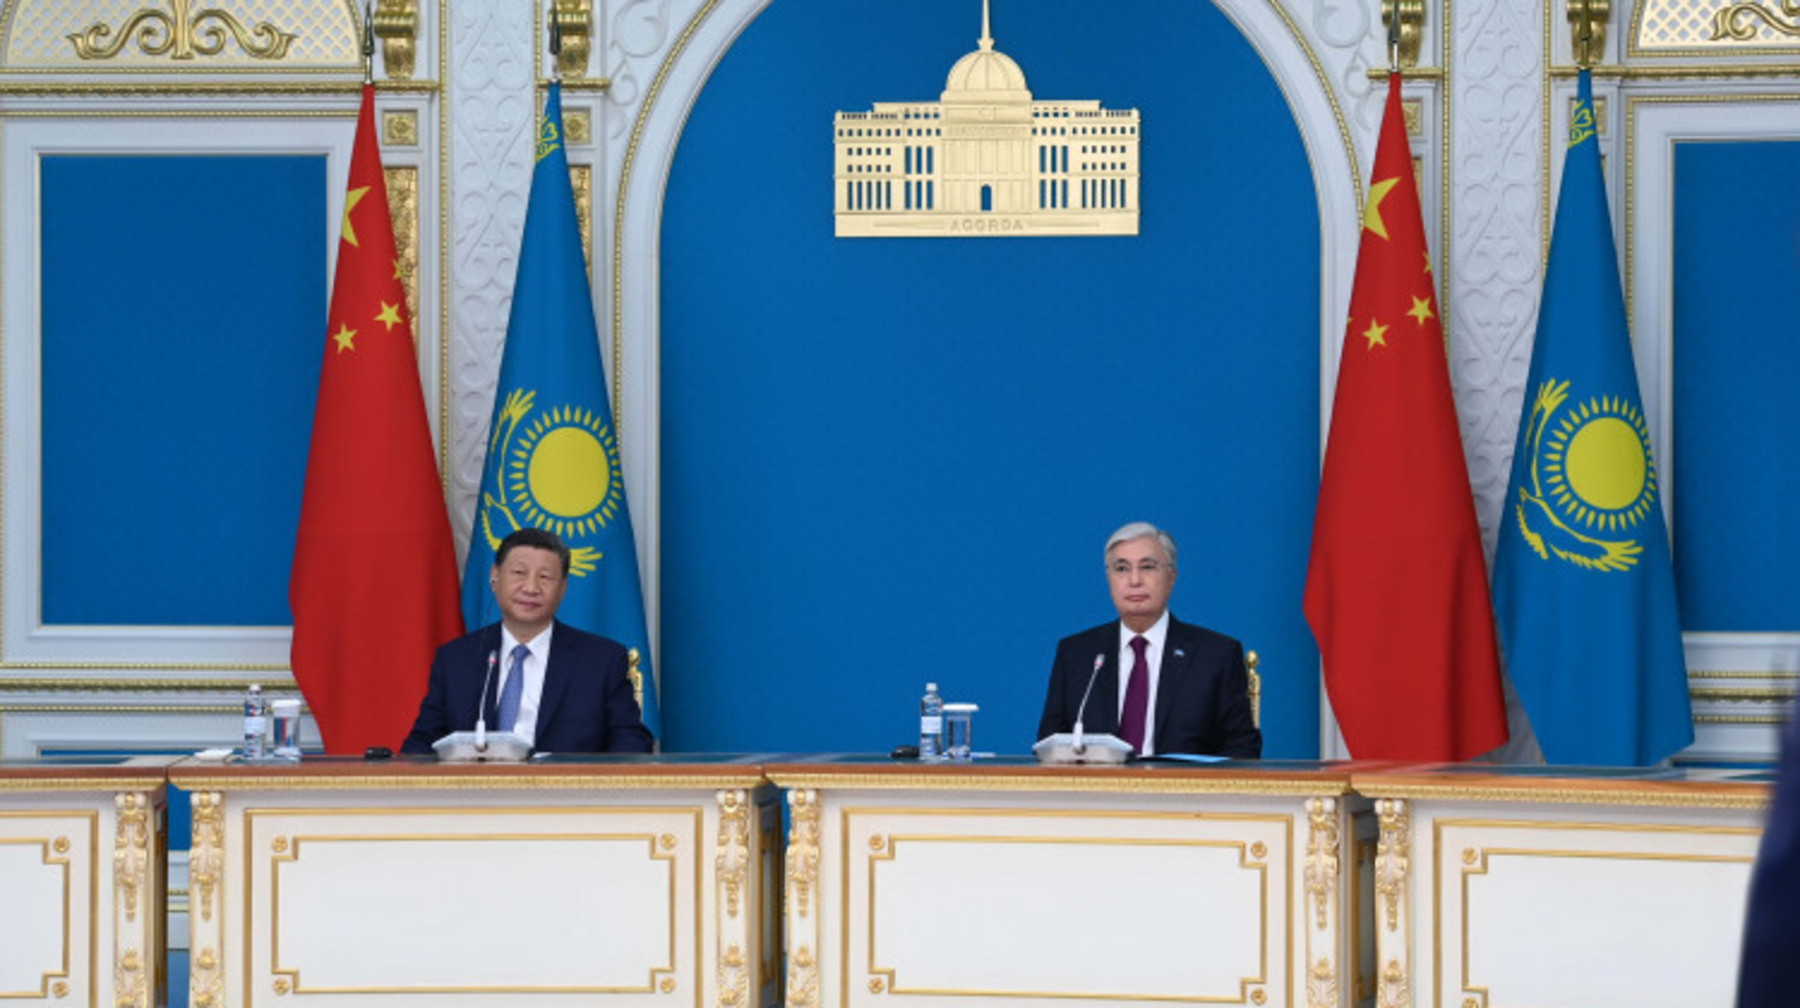 Токаев и Си Цзиньпин приняли участие в торжественной церемонии открытия ряда объектов